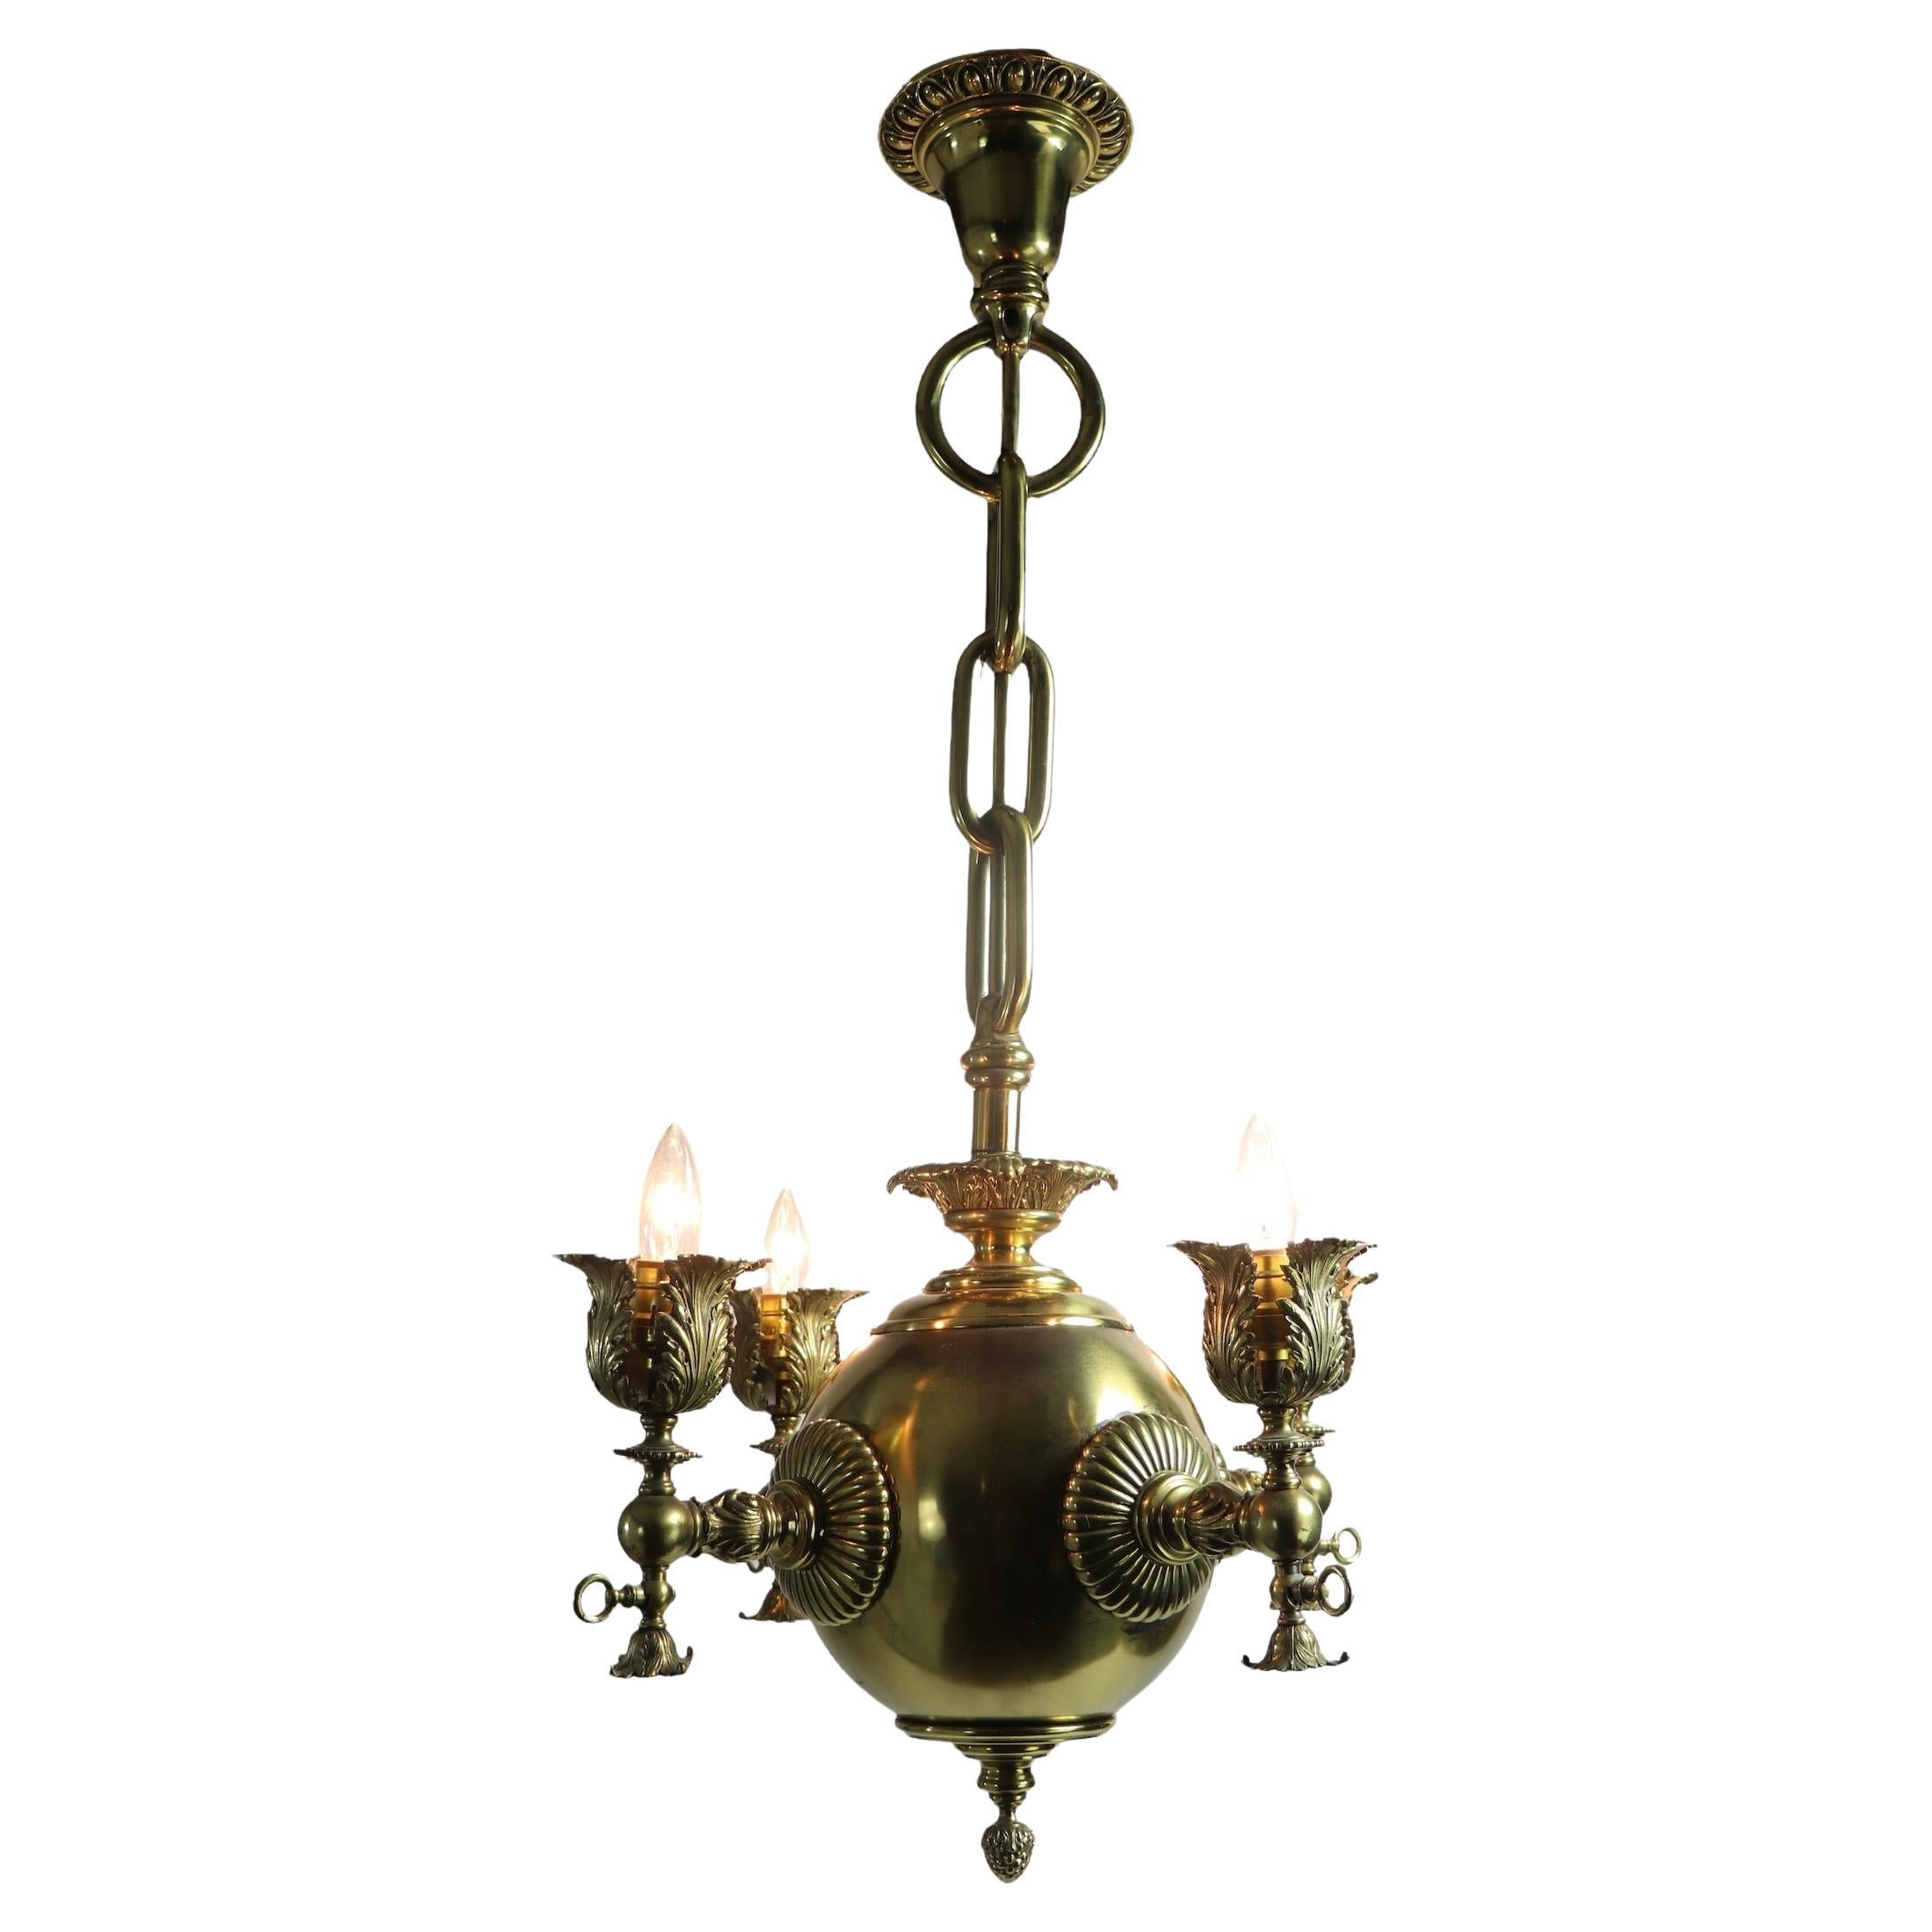 Vierflammige elektrifizierte Gas-Leuchte aus Messing, 19. Jahrhundert, hergestellt in USA